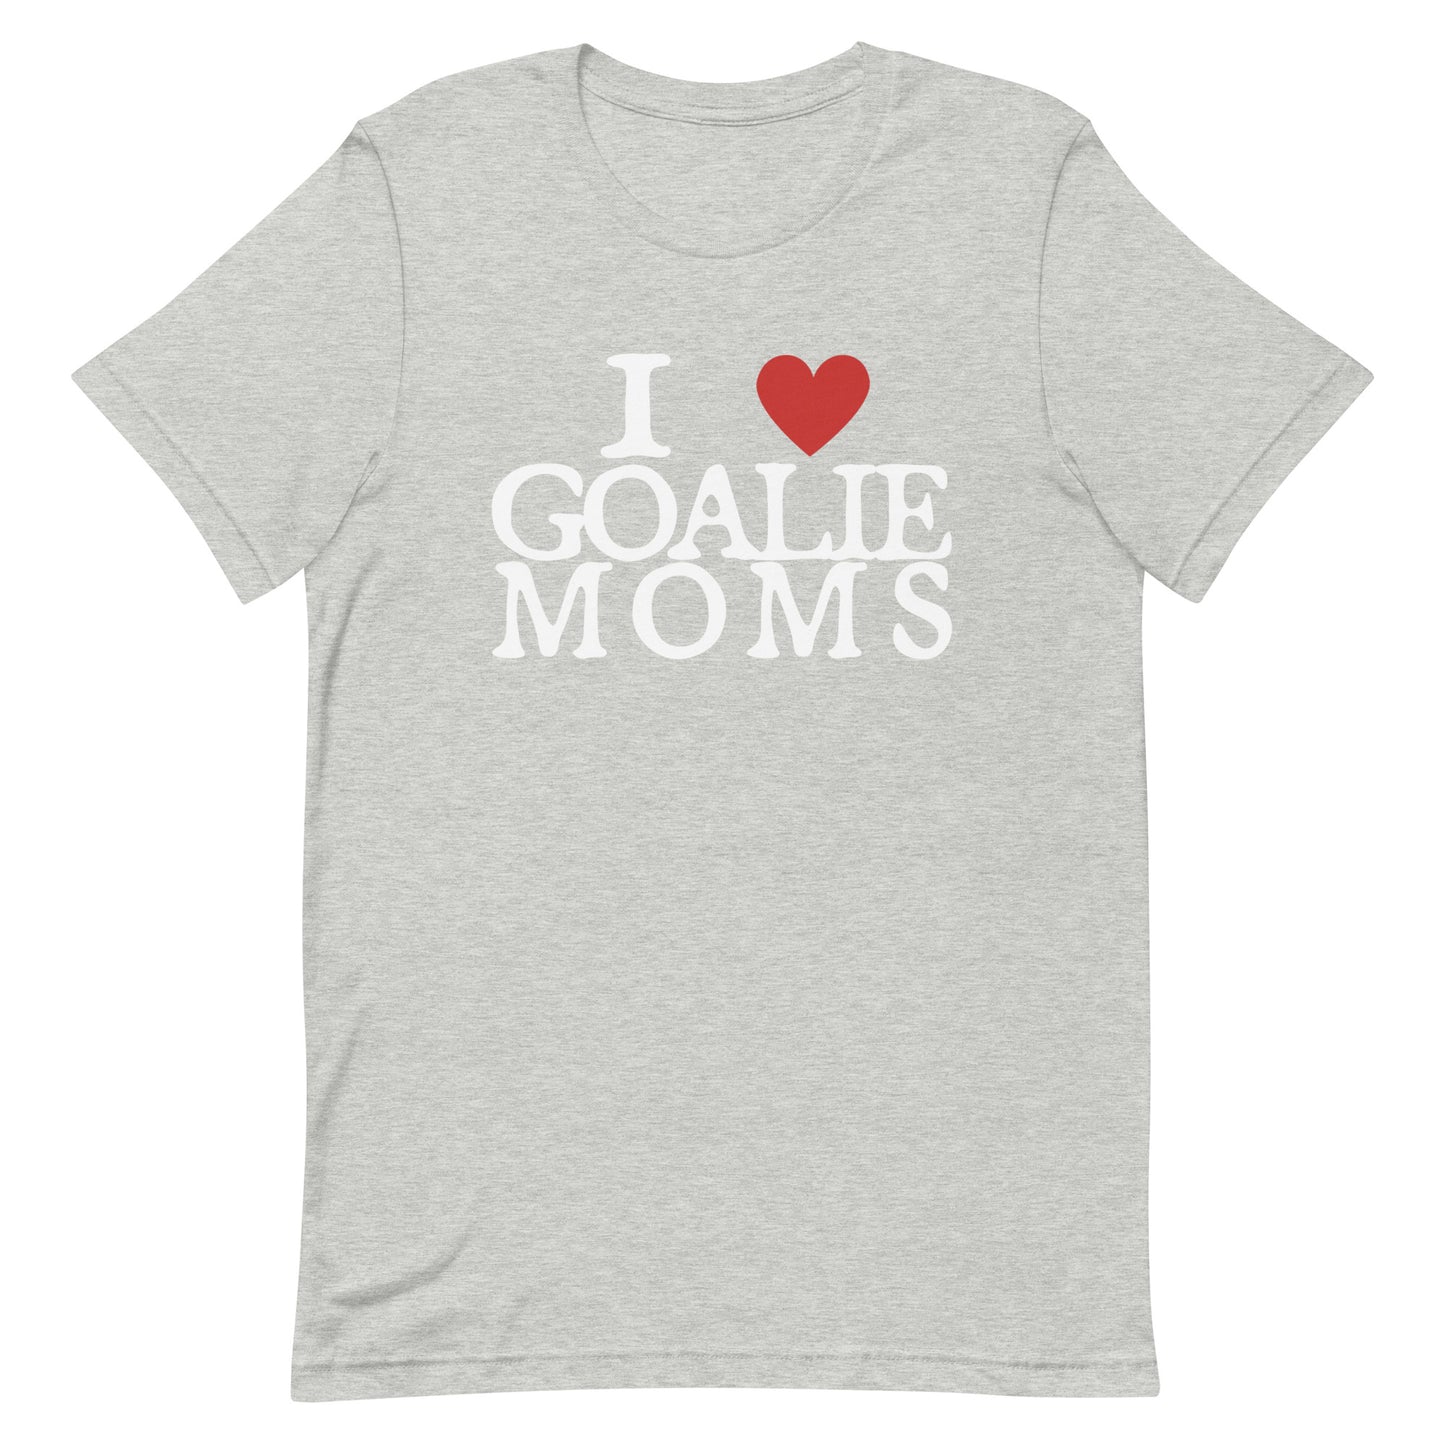 I Love Goalie Moms Unisex t-shirt